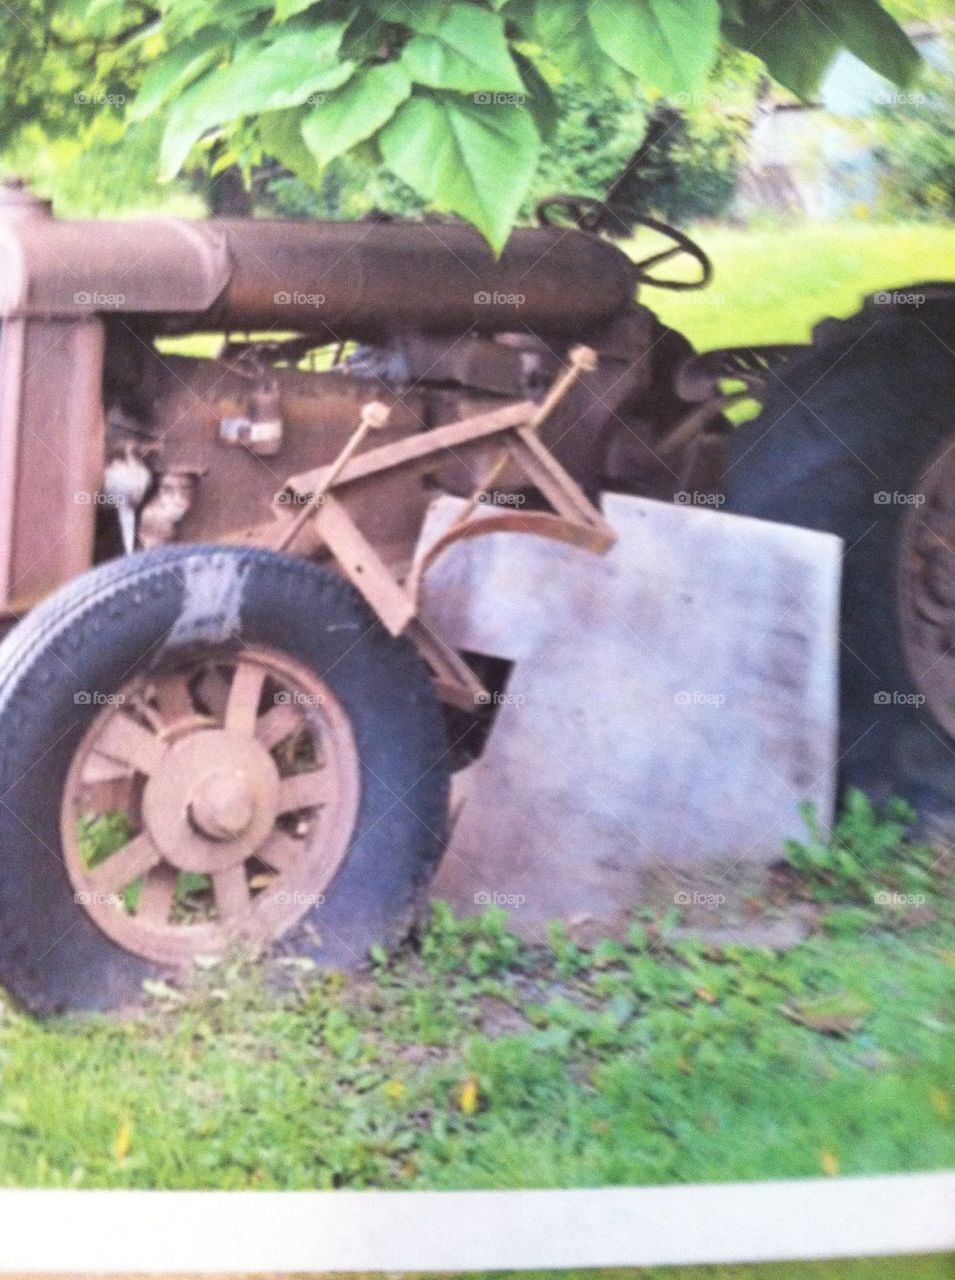 Tractor broken